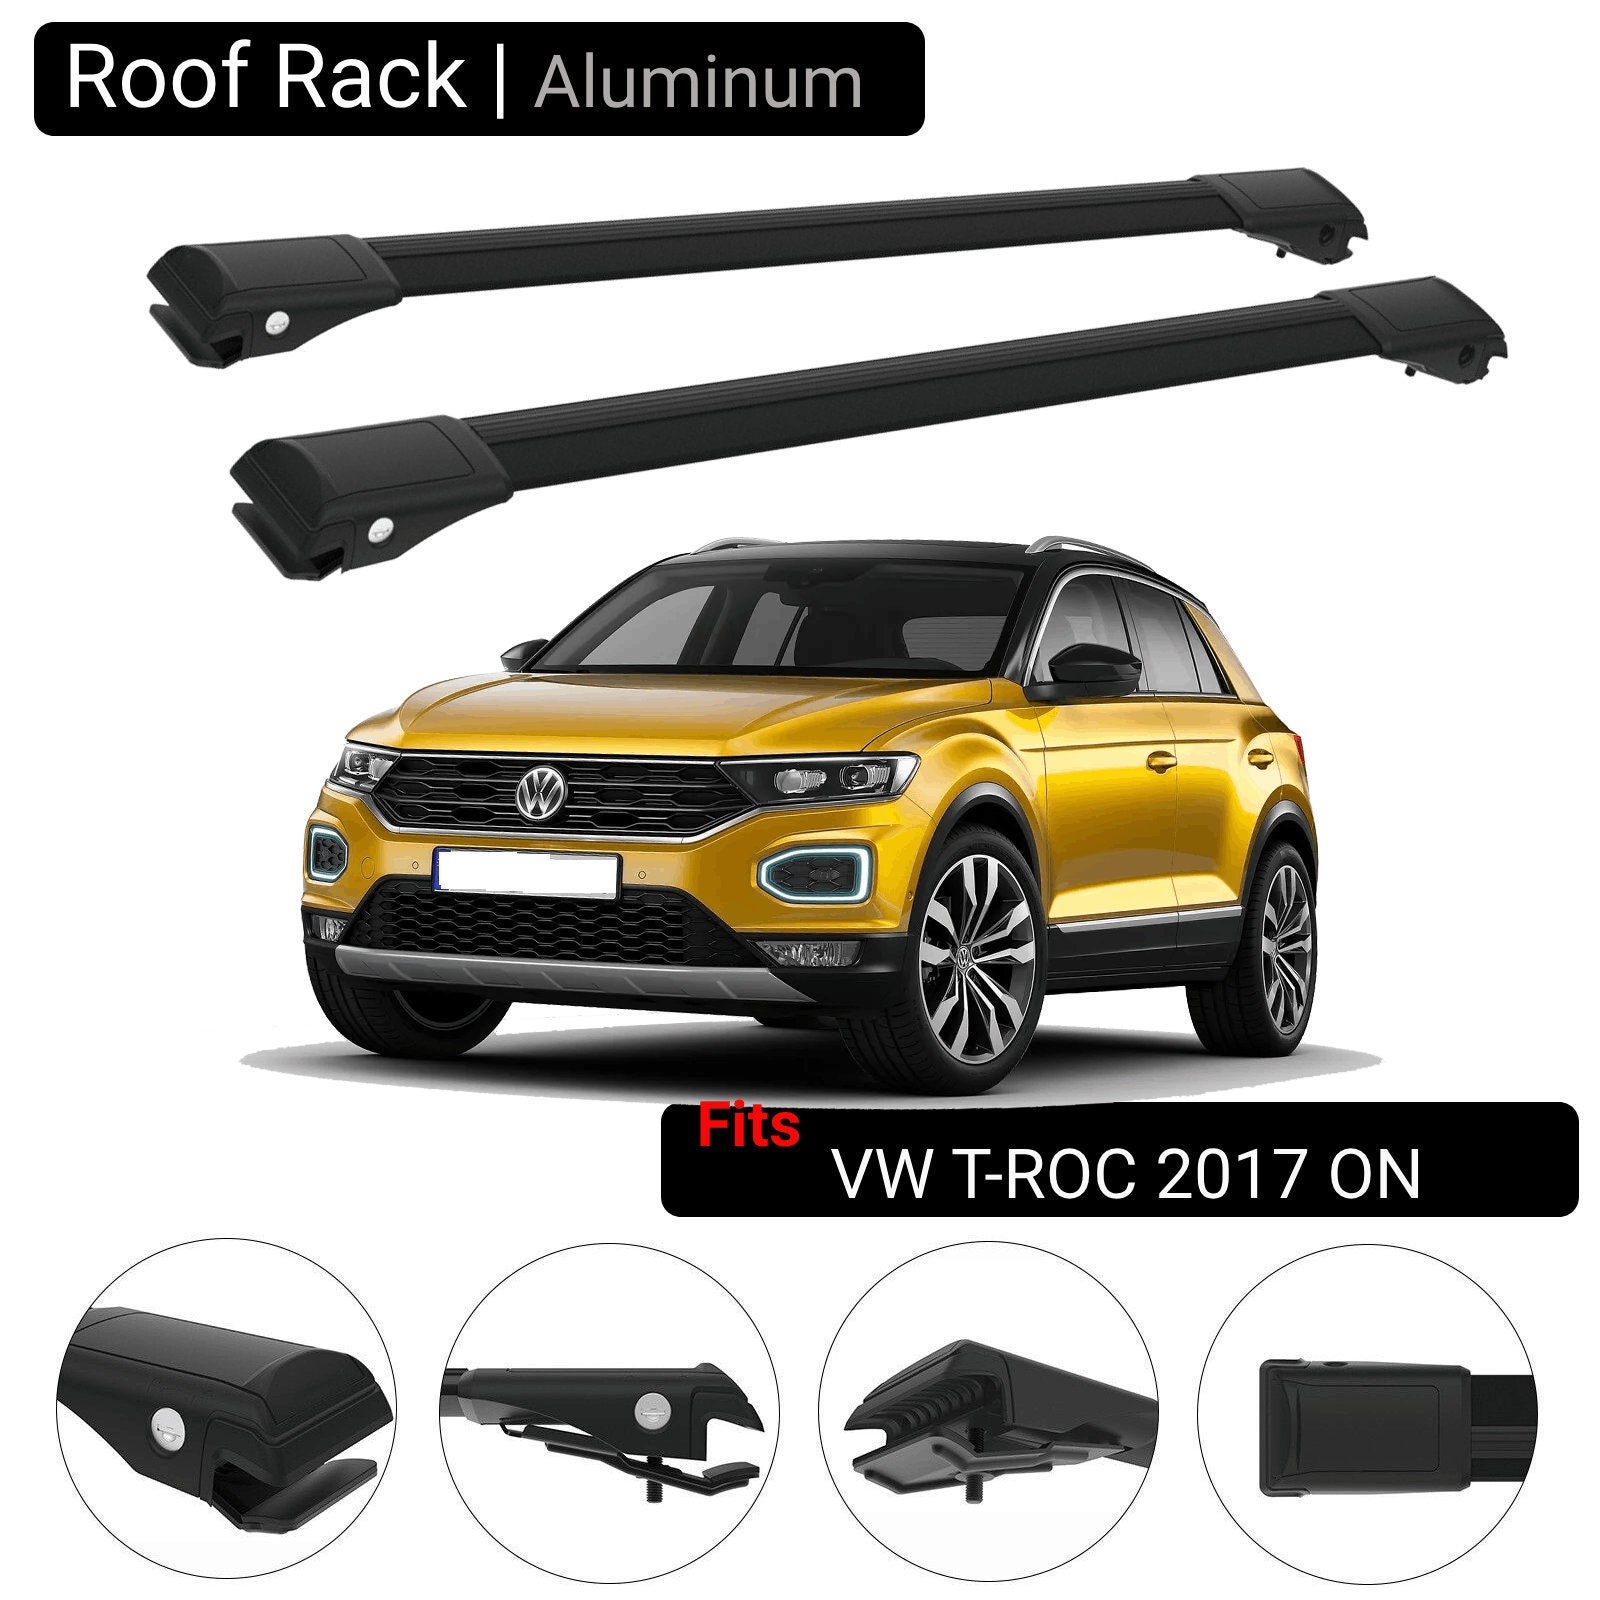 Buy VW T-ROC roof racks